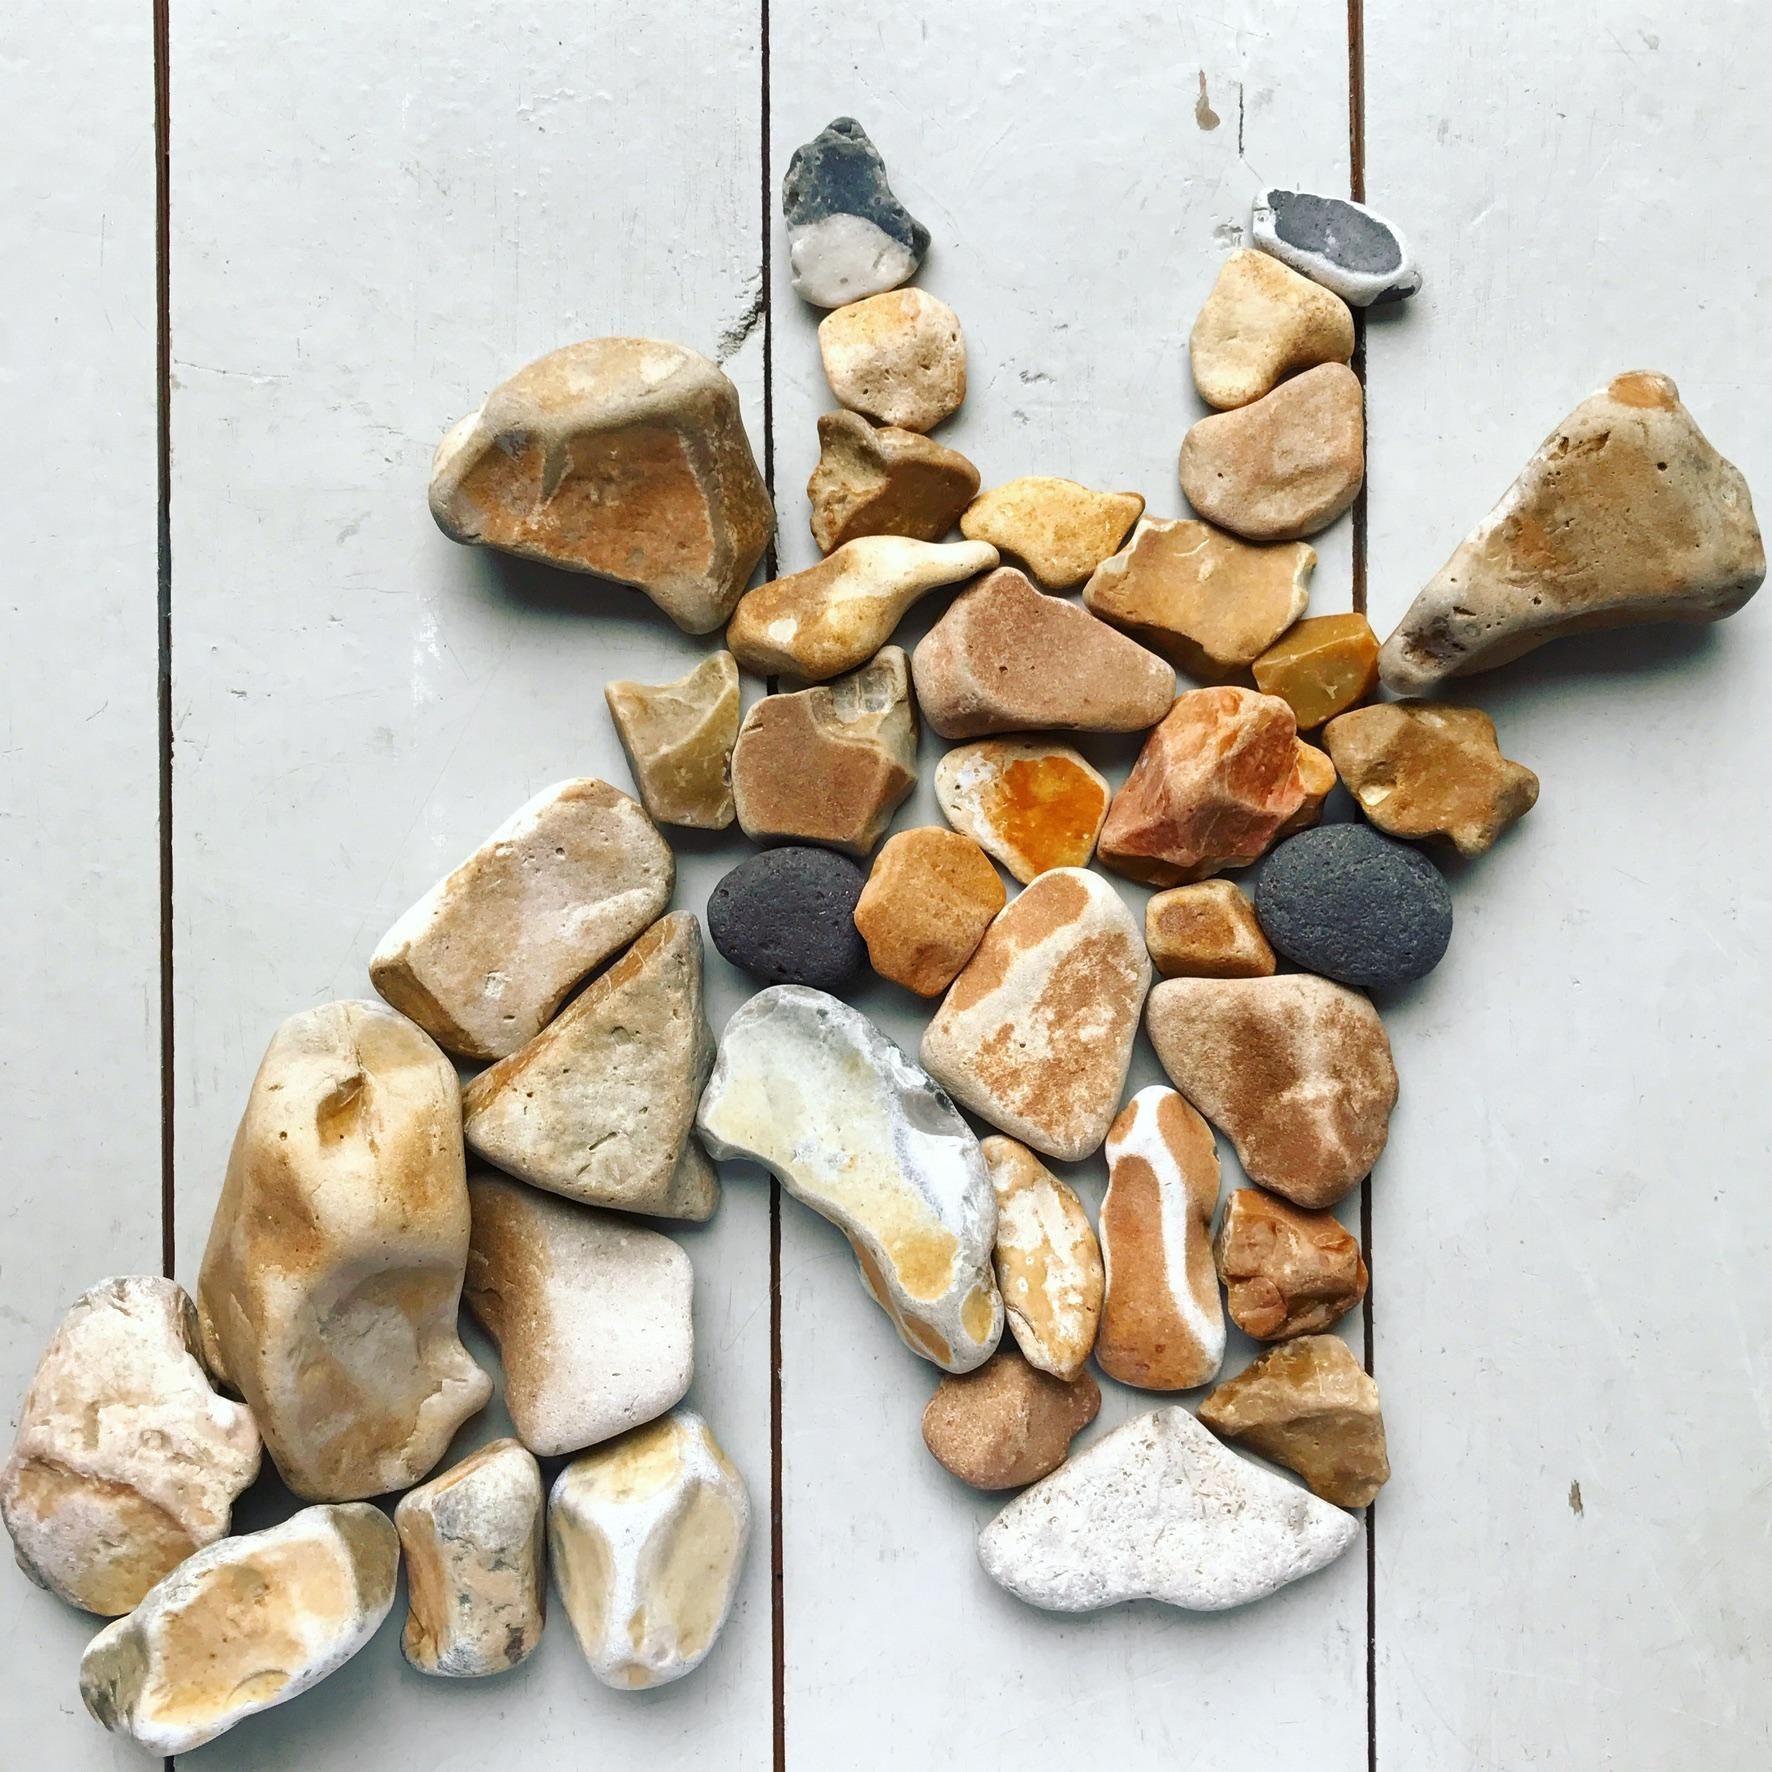 Flusskiesel sammeln und los geht‘s #Kieselpuzzel #riverstone #Flusskiesel #mosaik #summerdiy #stonepicture #naturdiy